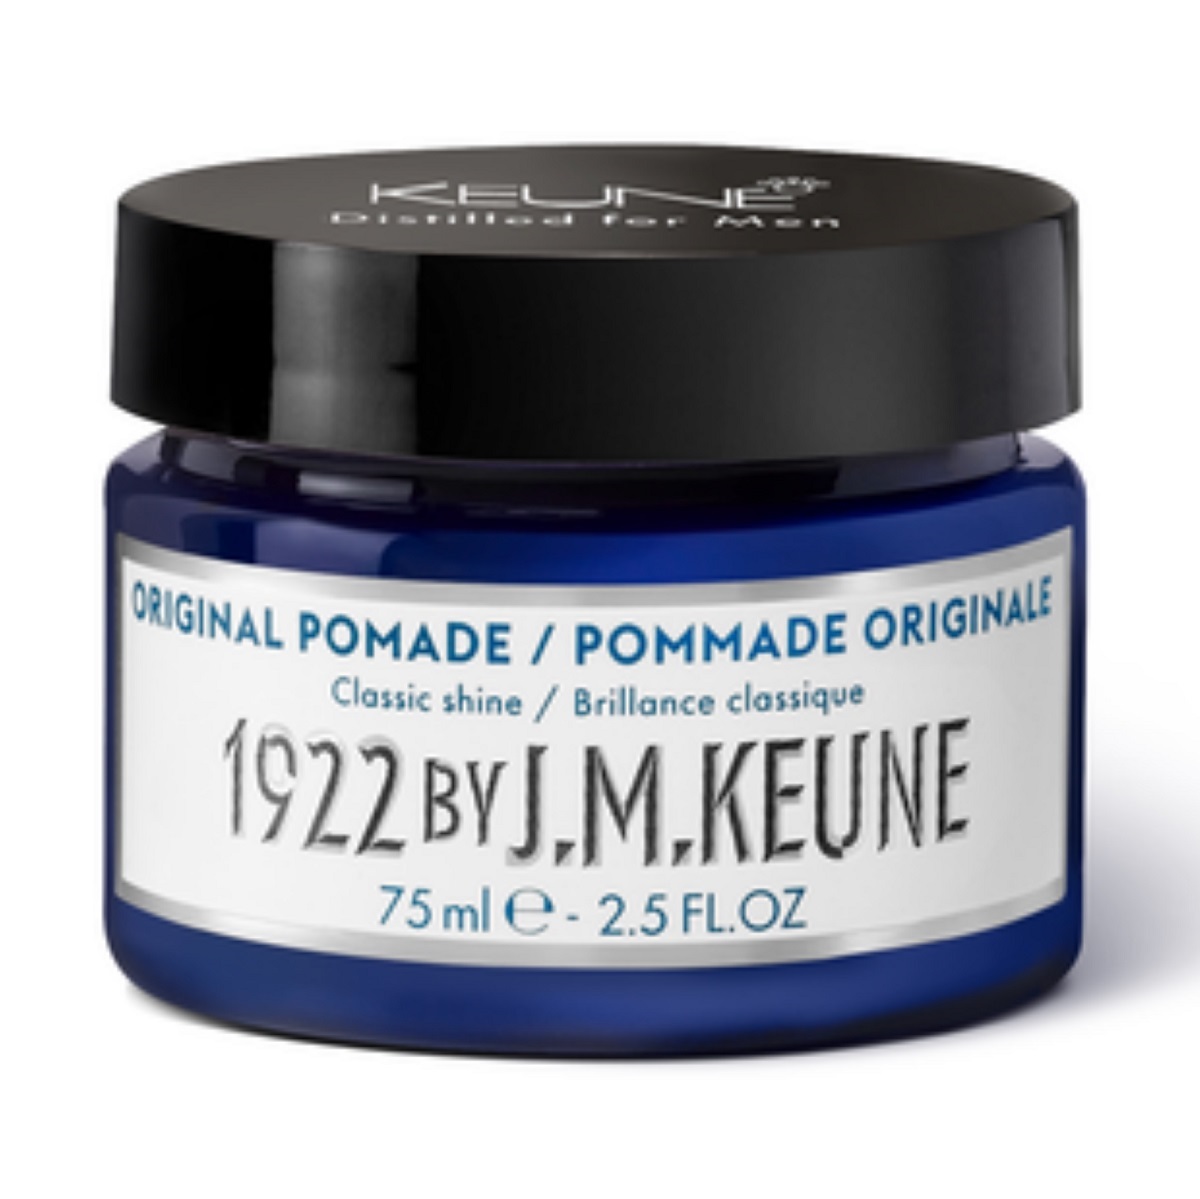 Купить Keune Классическая помадка для укладки Original Pomade, 75 мл (Keune, 1922 by J.M. Keune)